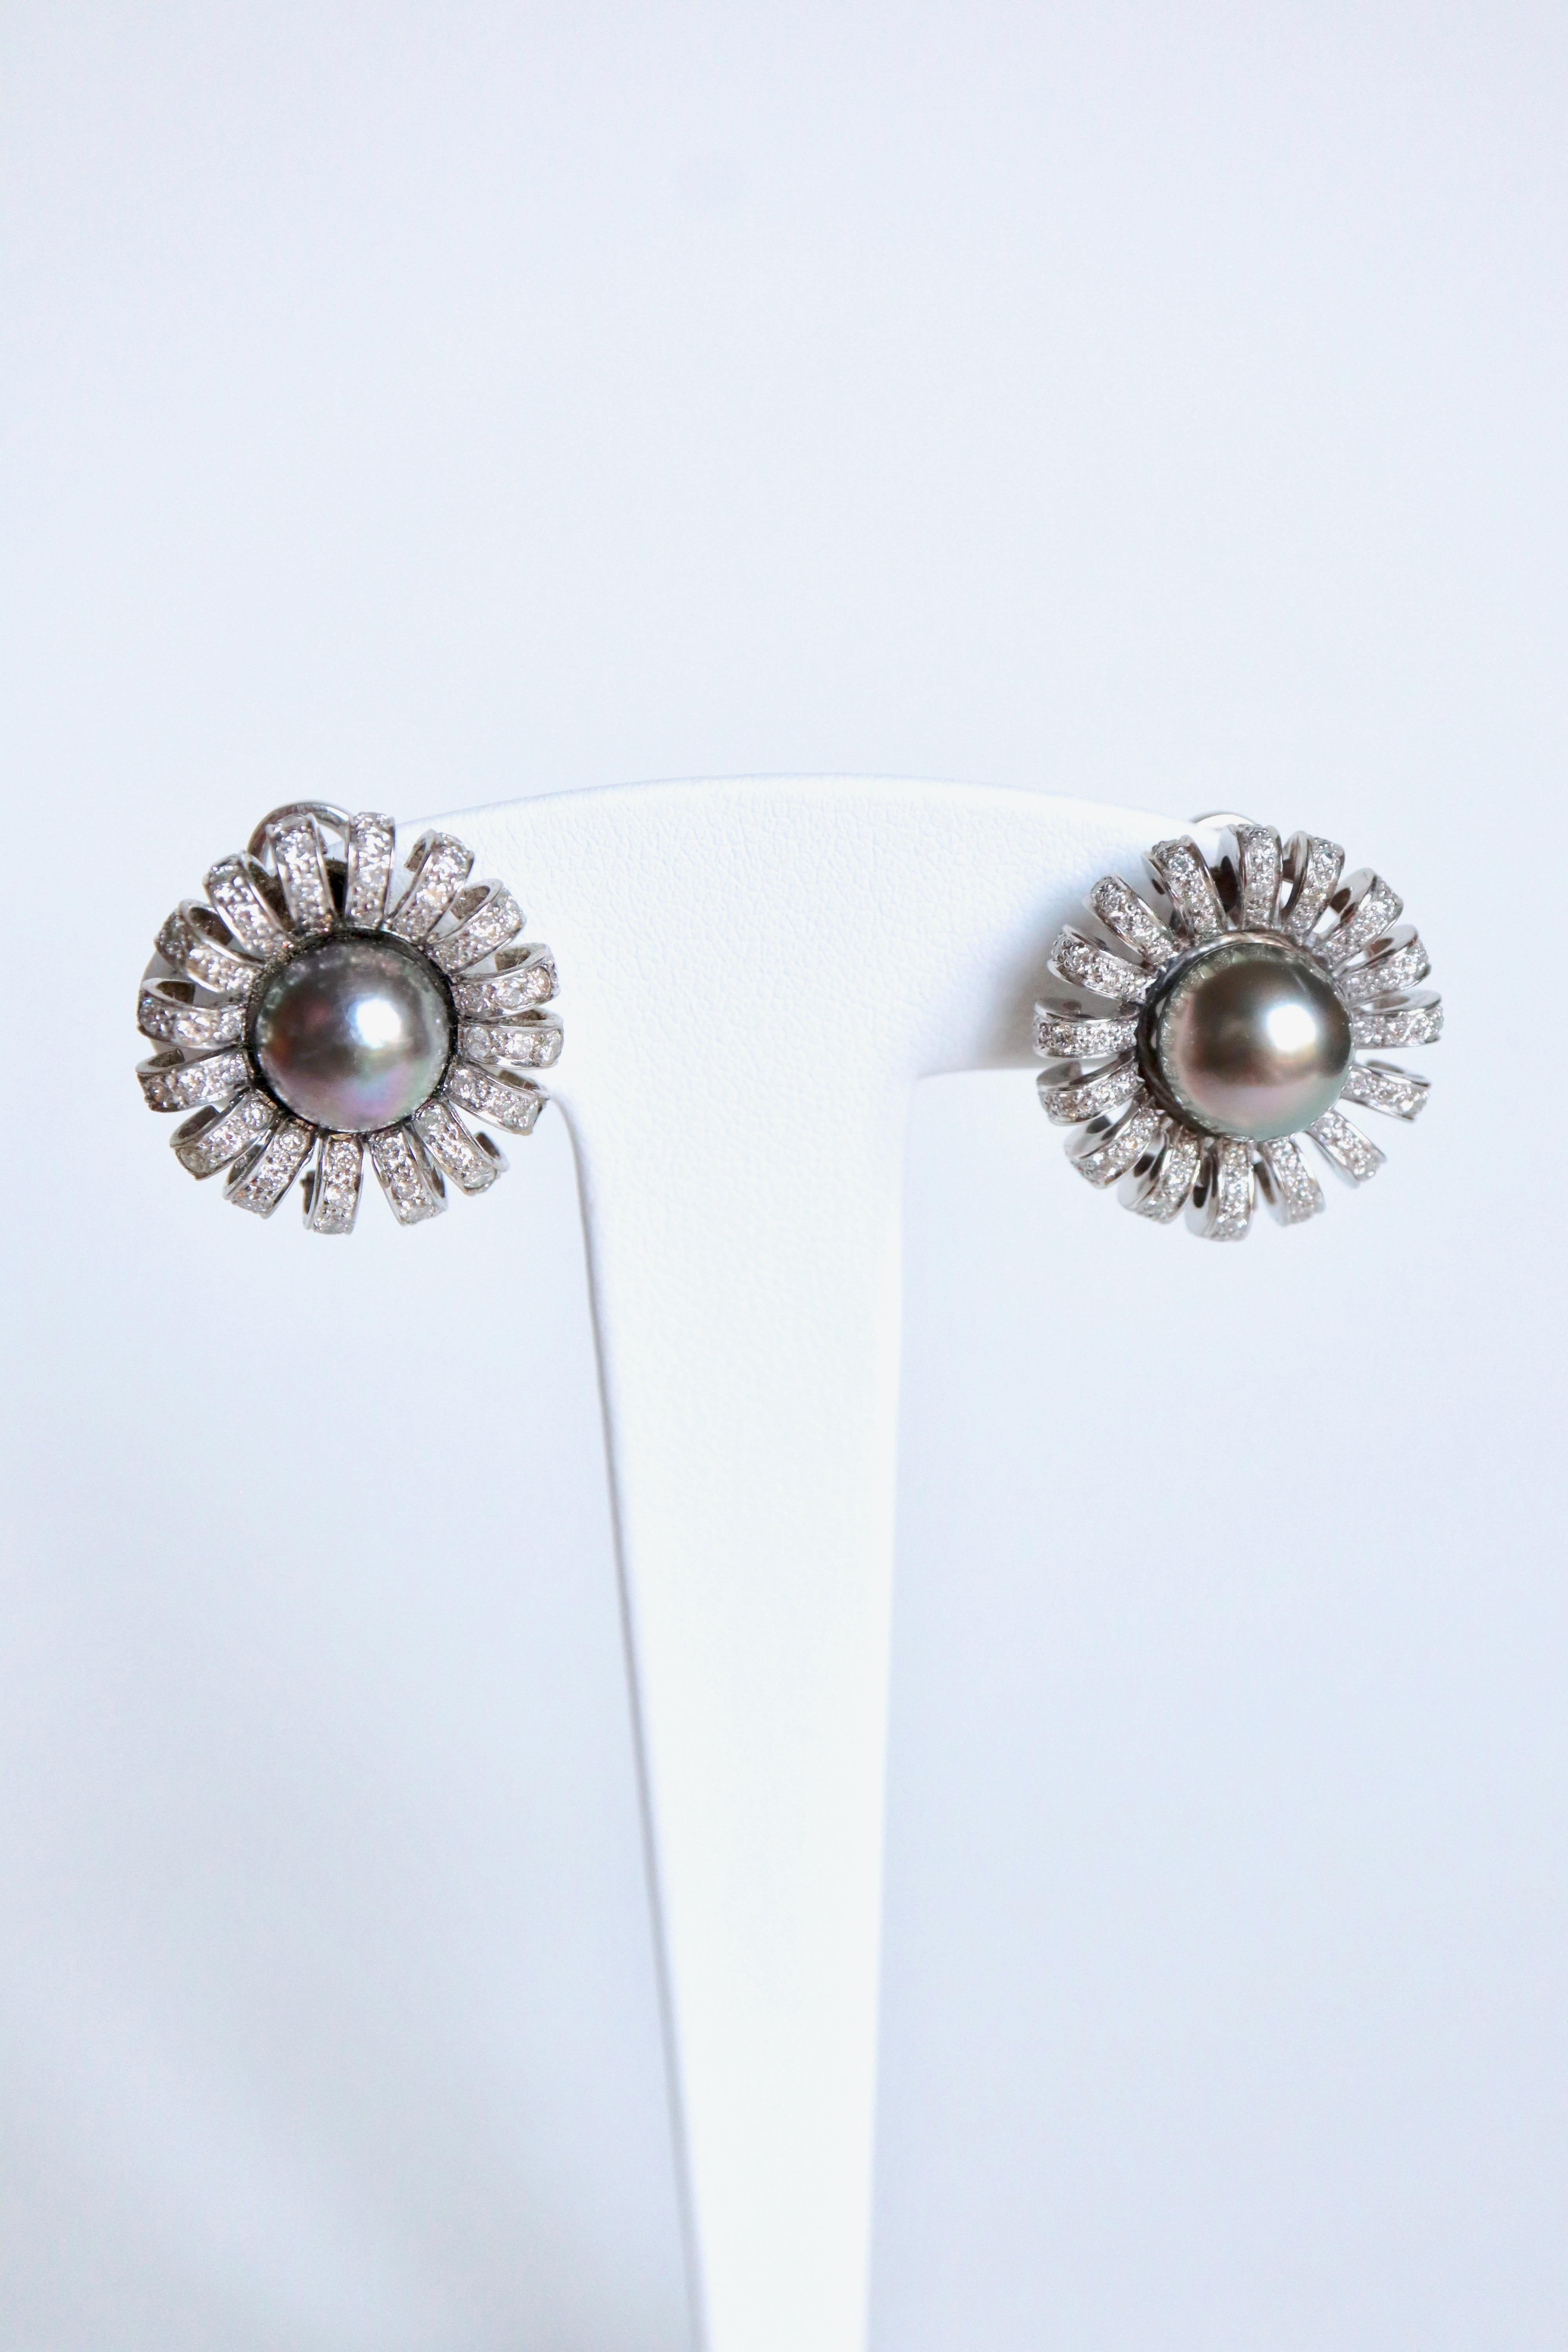 Ohrringe aus 18 Karat Weißgold, schwarzen Perlen und Diamanten. Die Perlen sind von 16 geschwungenen Blütenblättern